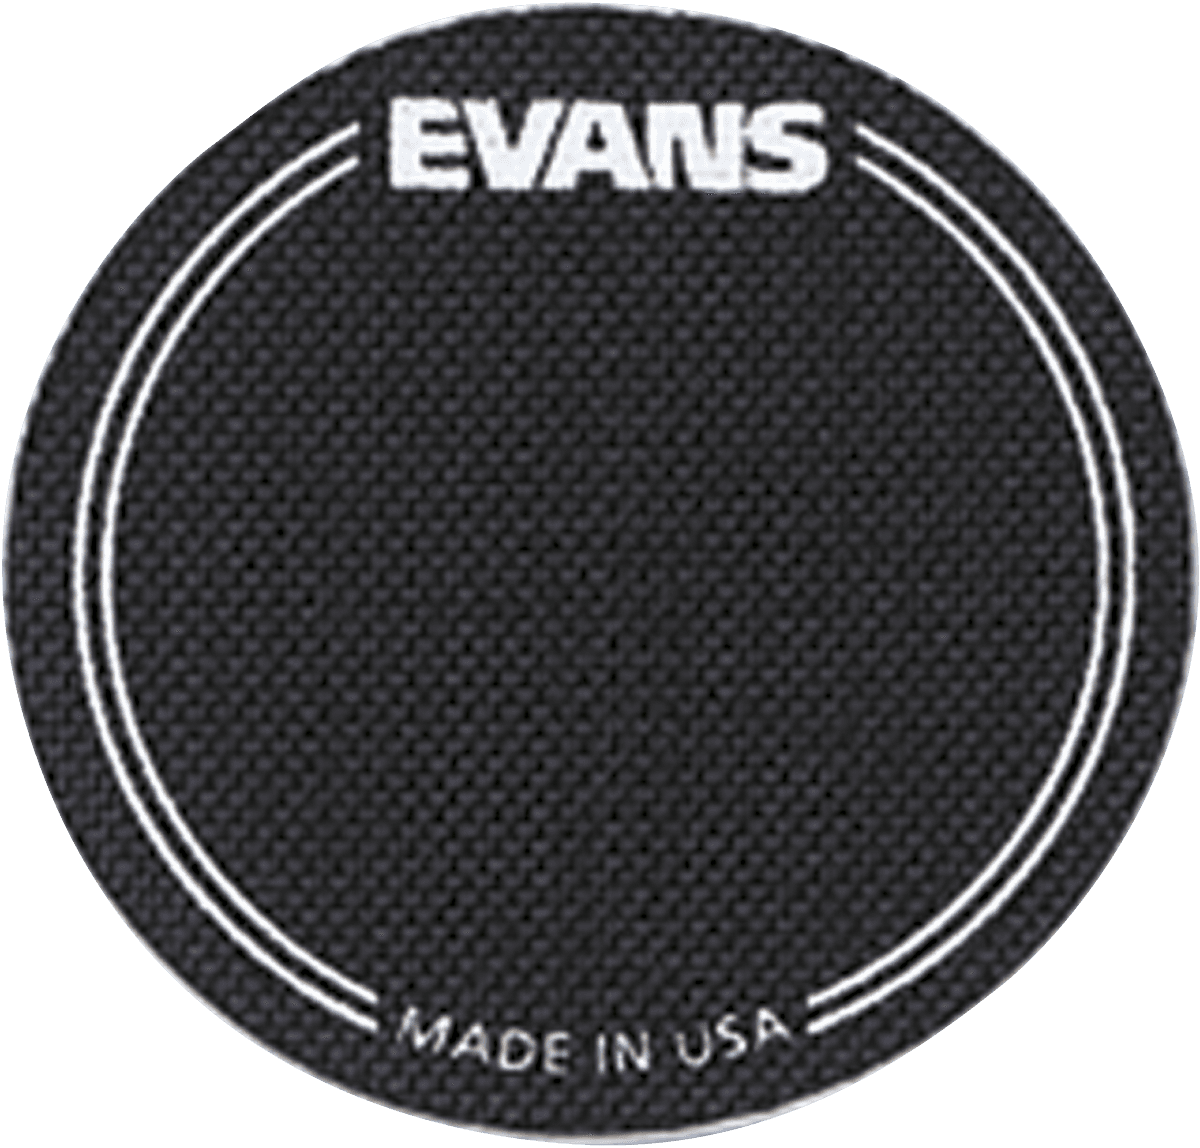 Evans EQPB1 - 2 patches gc simple batte